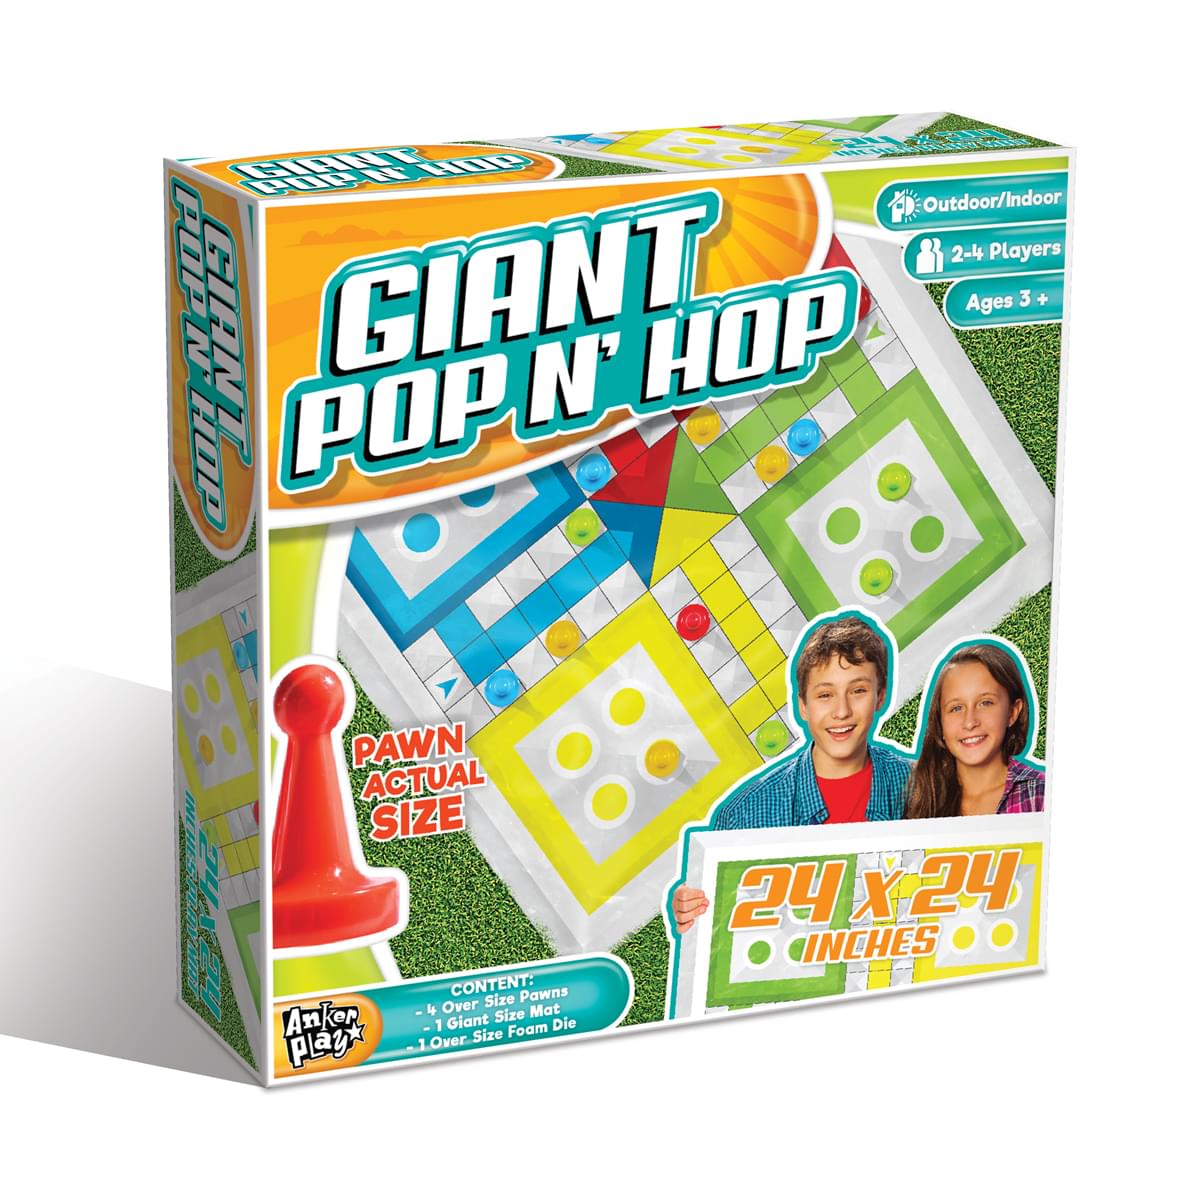 Giant Pop N Hop Indoor/Outdoor Game | 24x24 Inch Mat